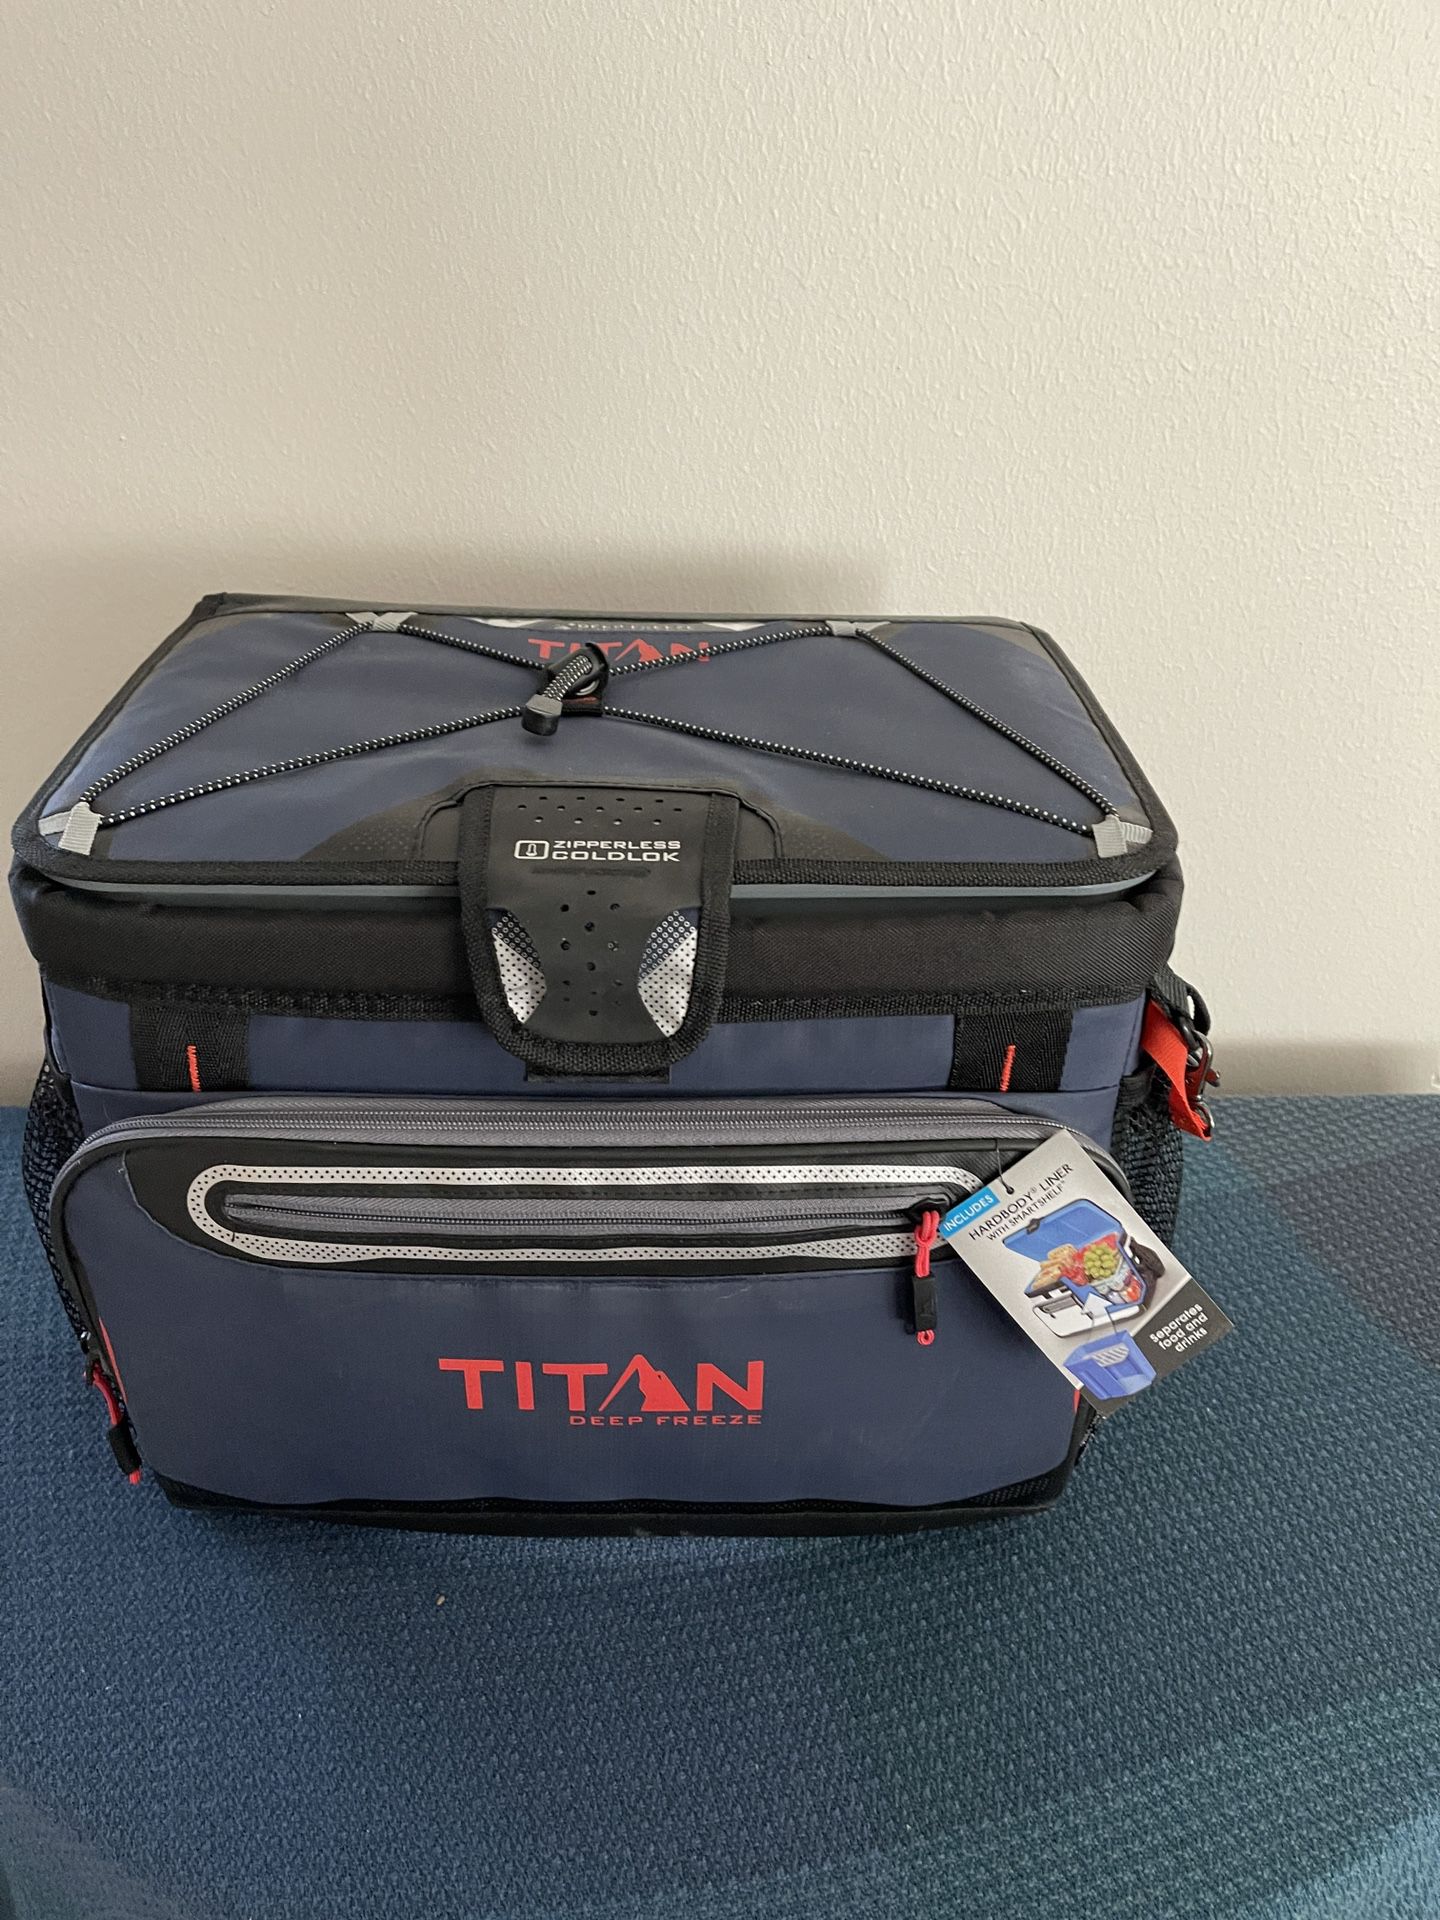 Titan Zipperless Cooler - New